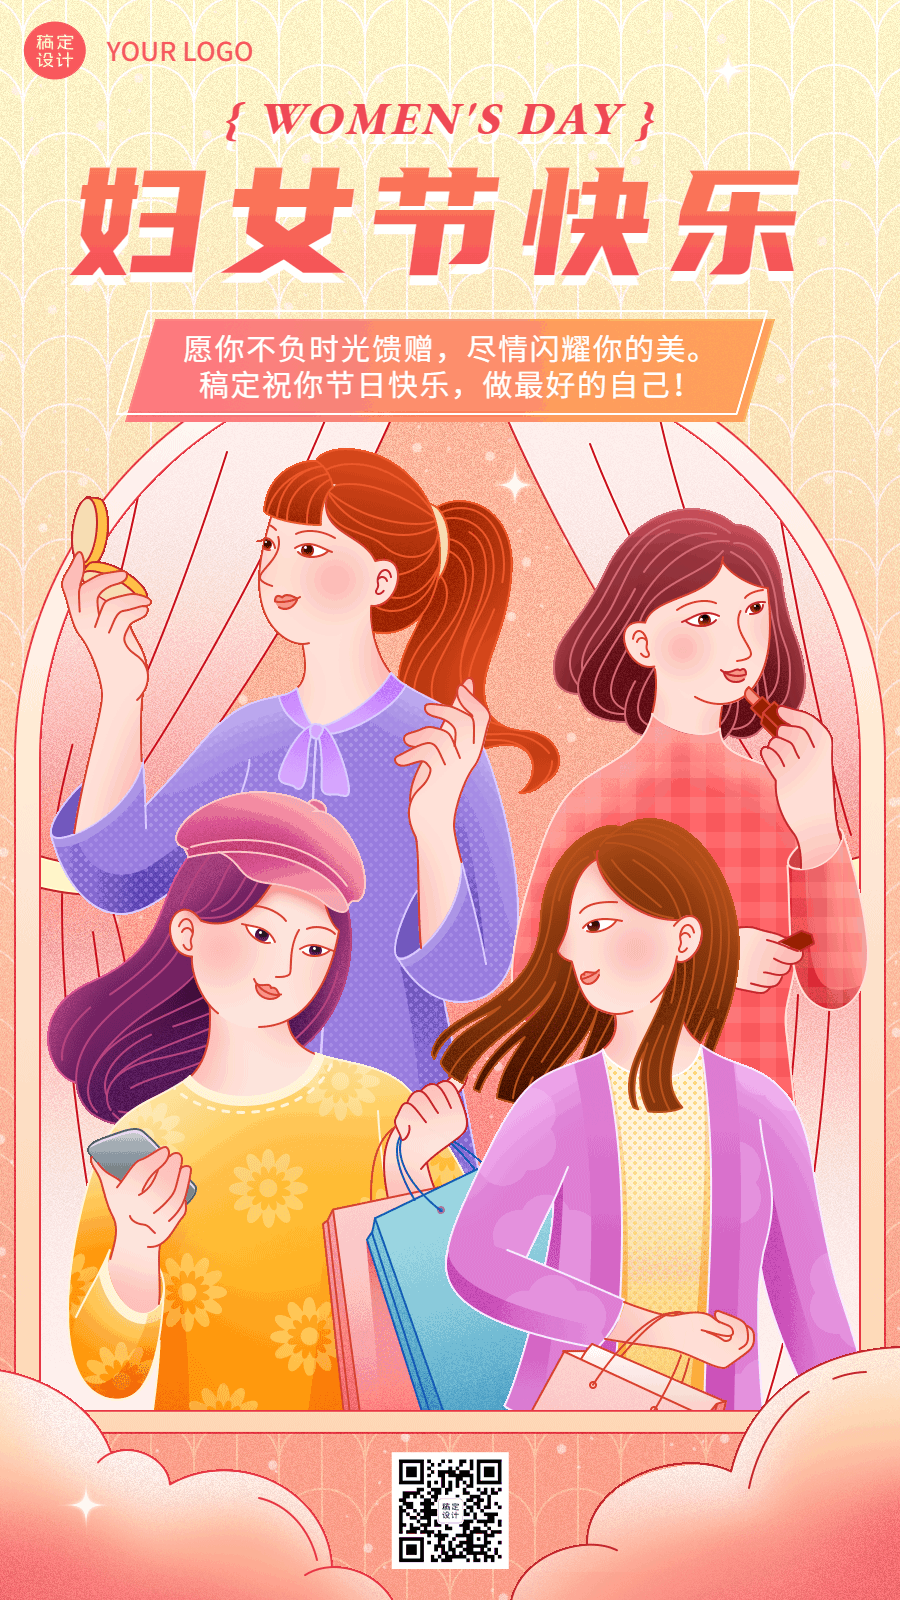 三八妇女节节日祝福动态海报预览效果